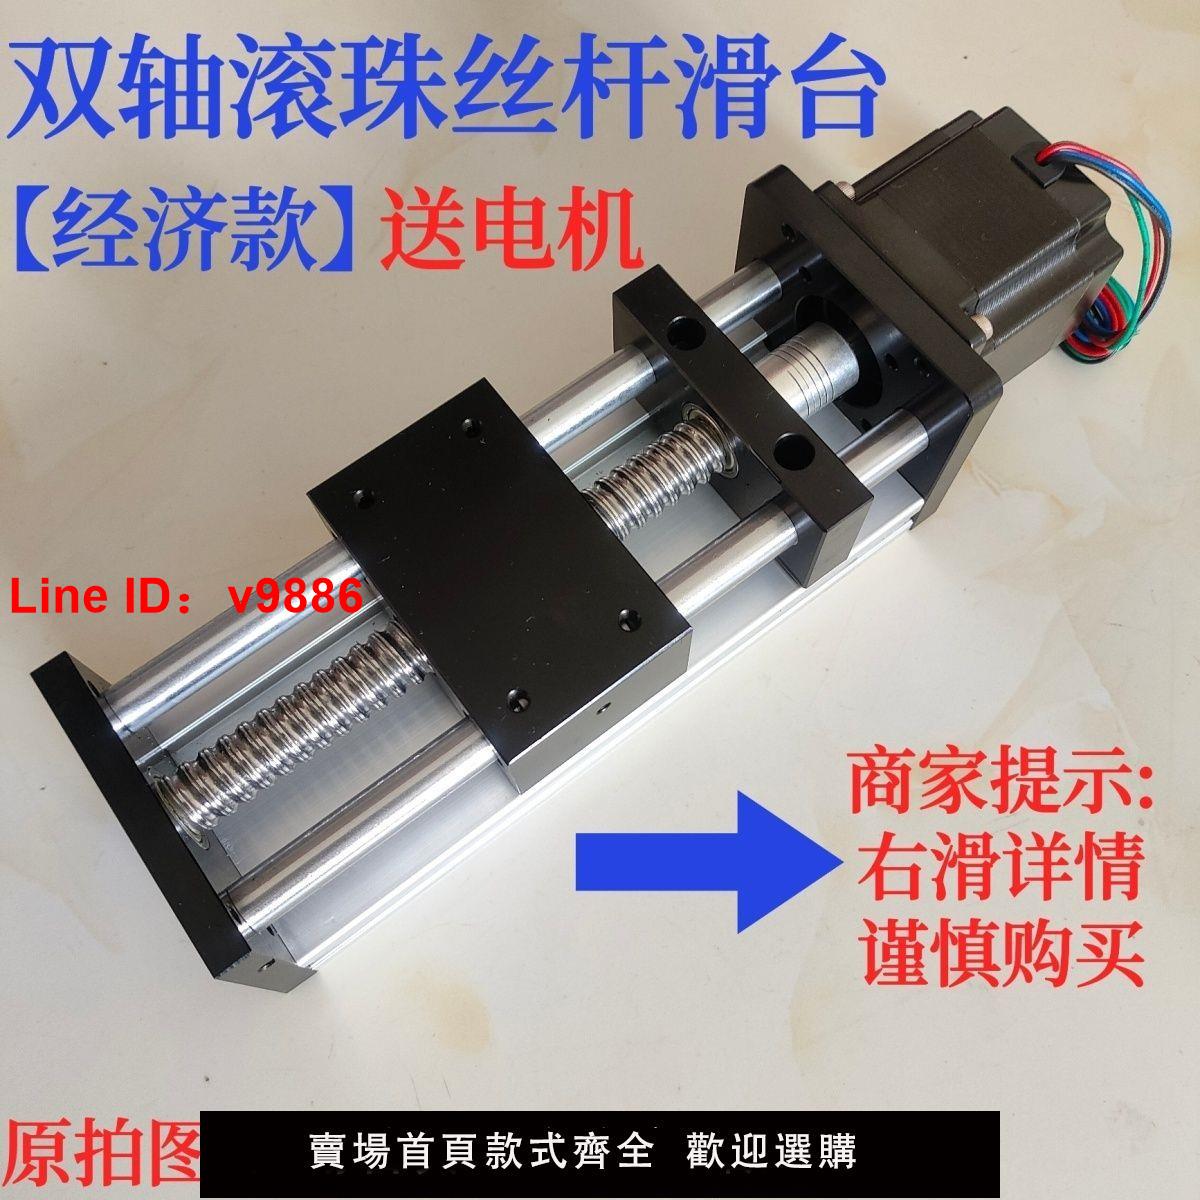 【台灣公司 超低價】GGP雙光軸滾珠絲桿直線模組滑臺十字數控電動手動自動焊接手搖